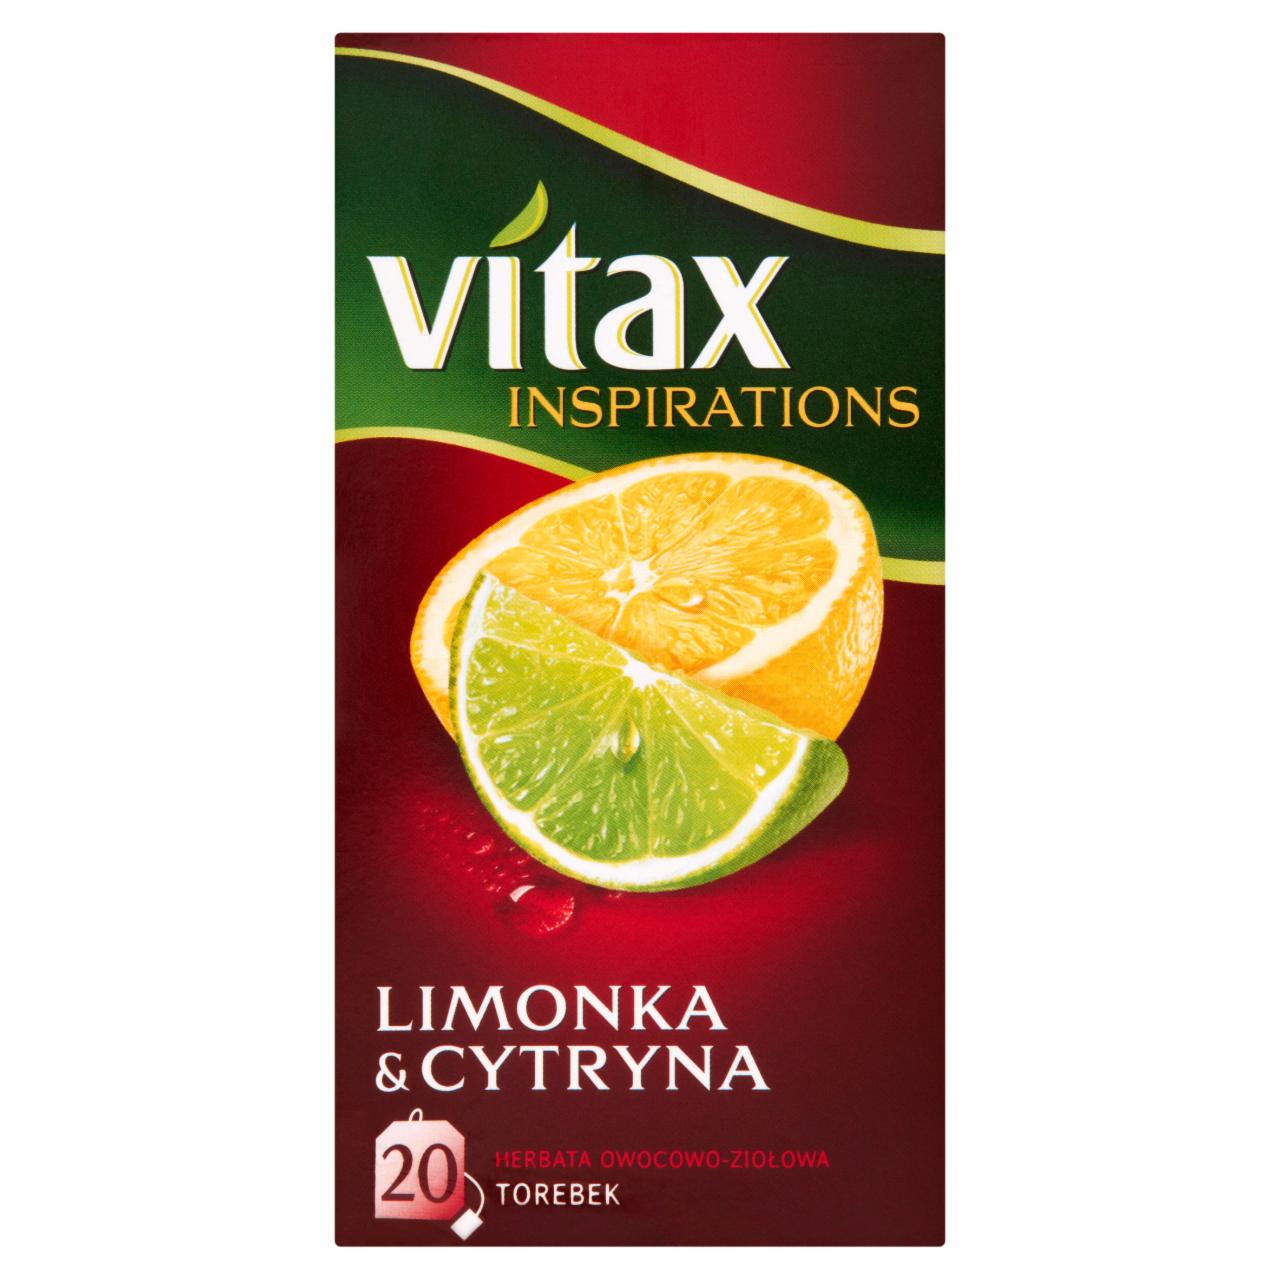 Zdjęcia - Vitax Inspirations Limonka and Cytryna Herbata owocowo-ziołowa 40 g (20 torebek)